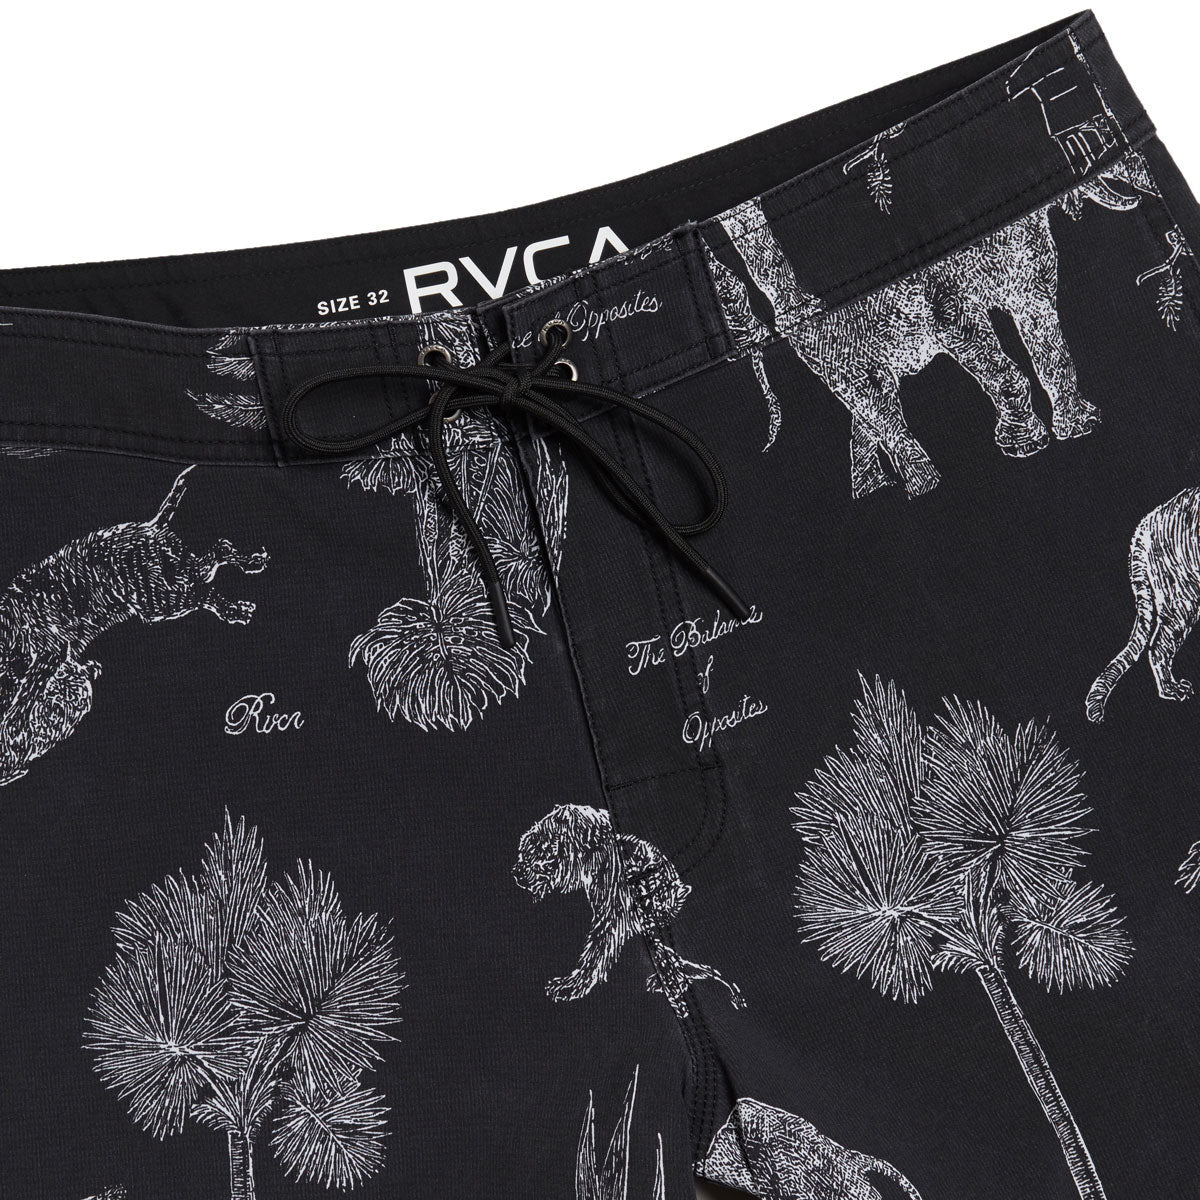 RVCA Va Pigment Board Shorts - Black/White image 4